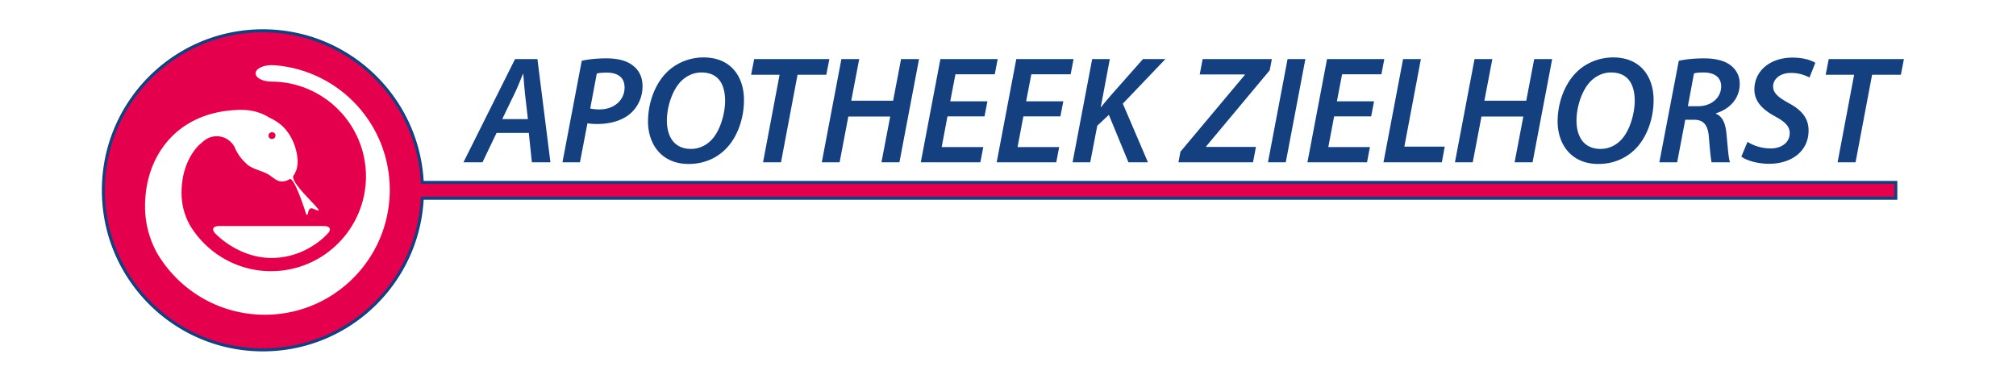 logo Apotheek Zielhorst.jpg